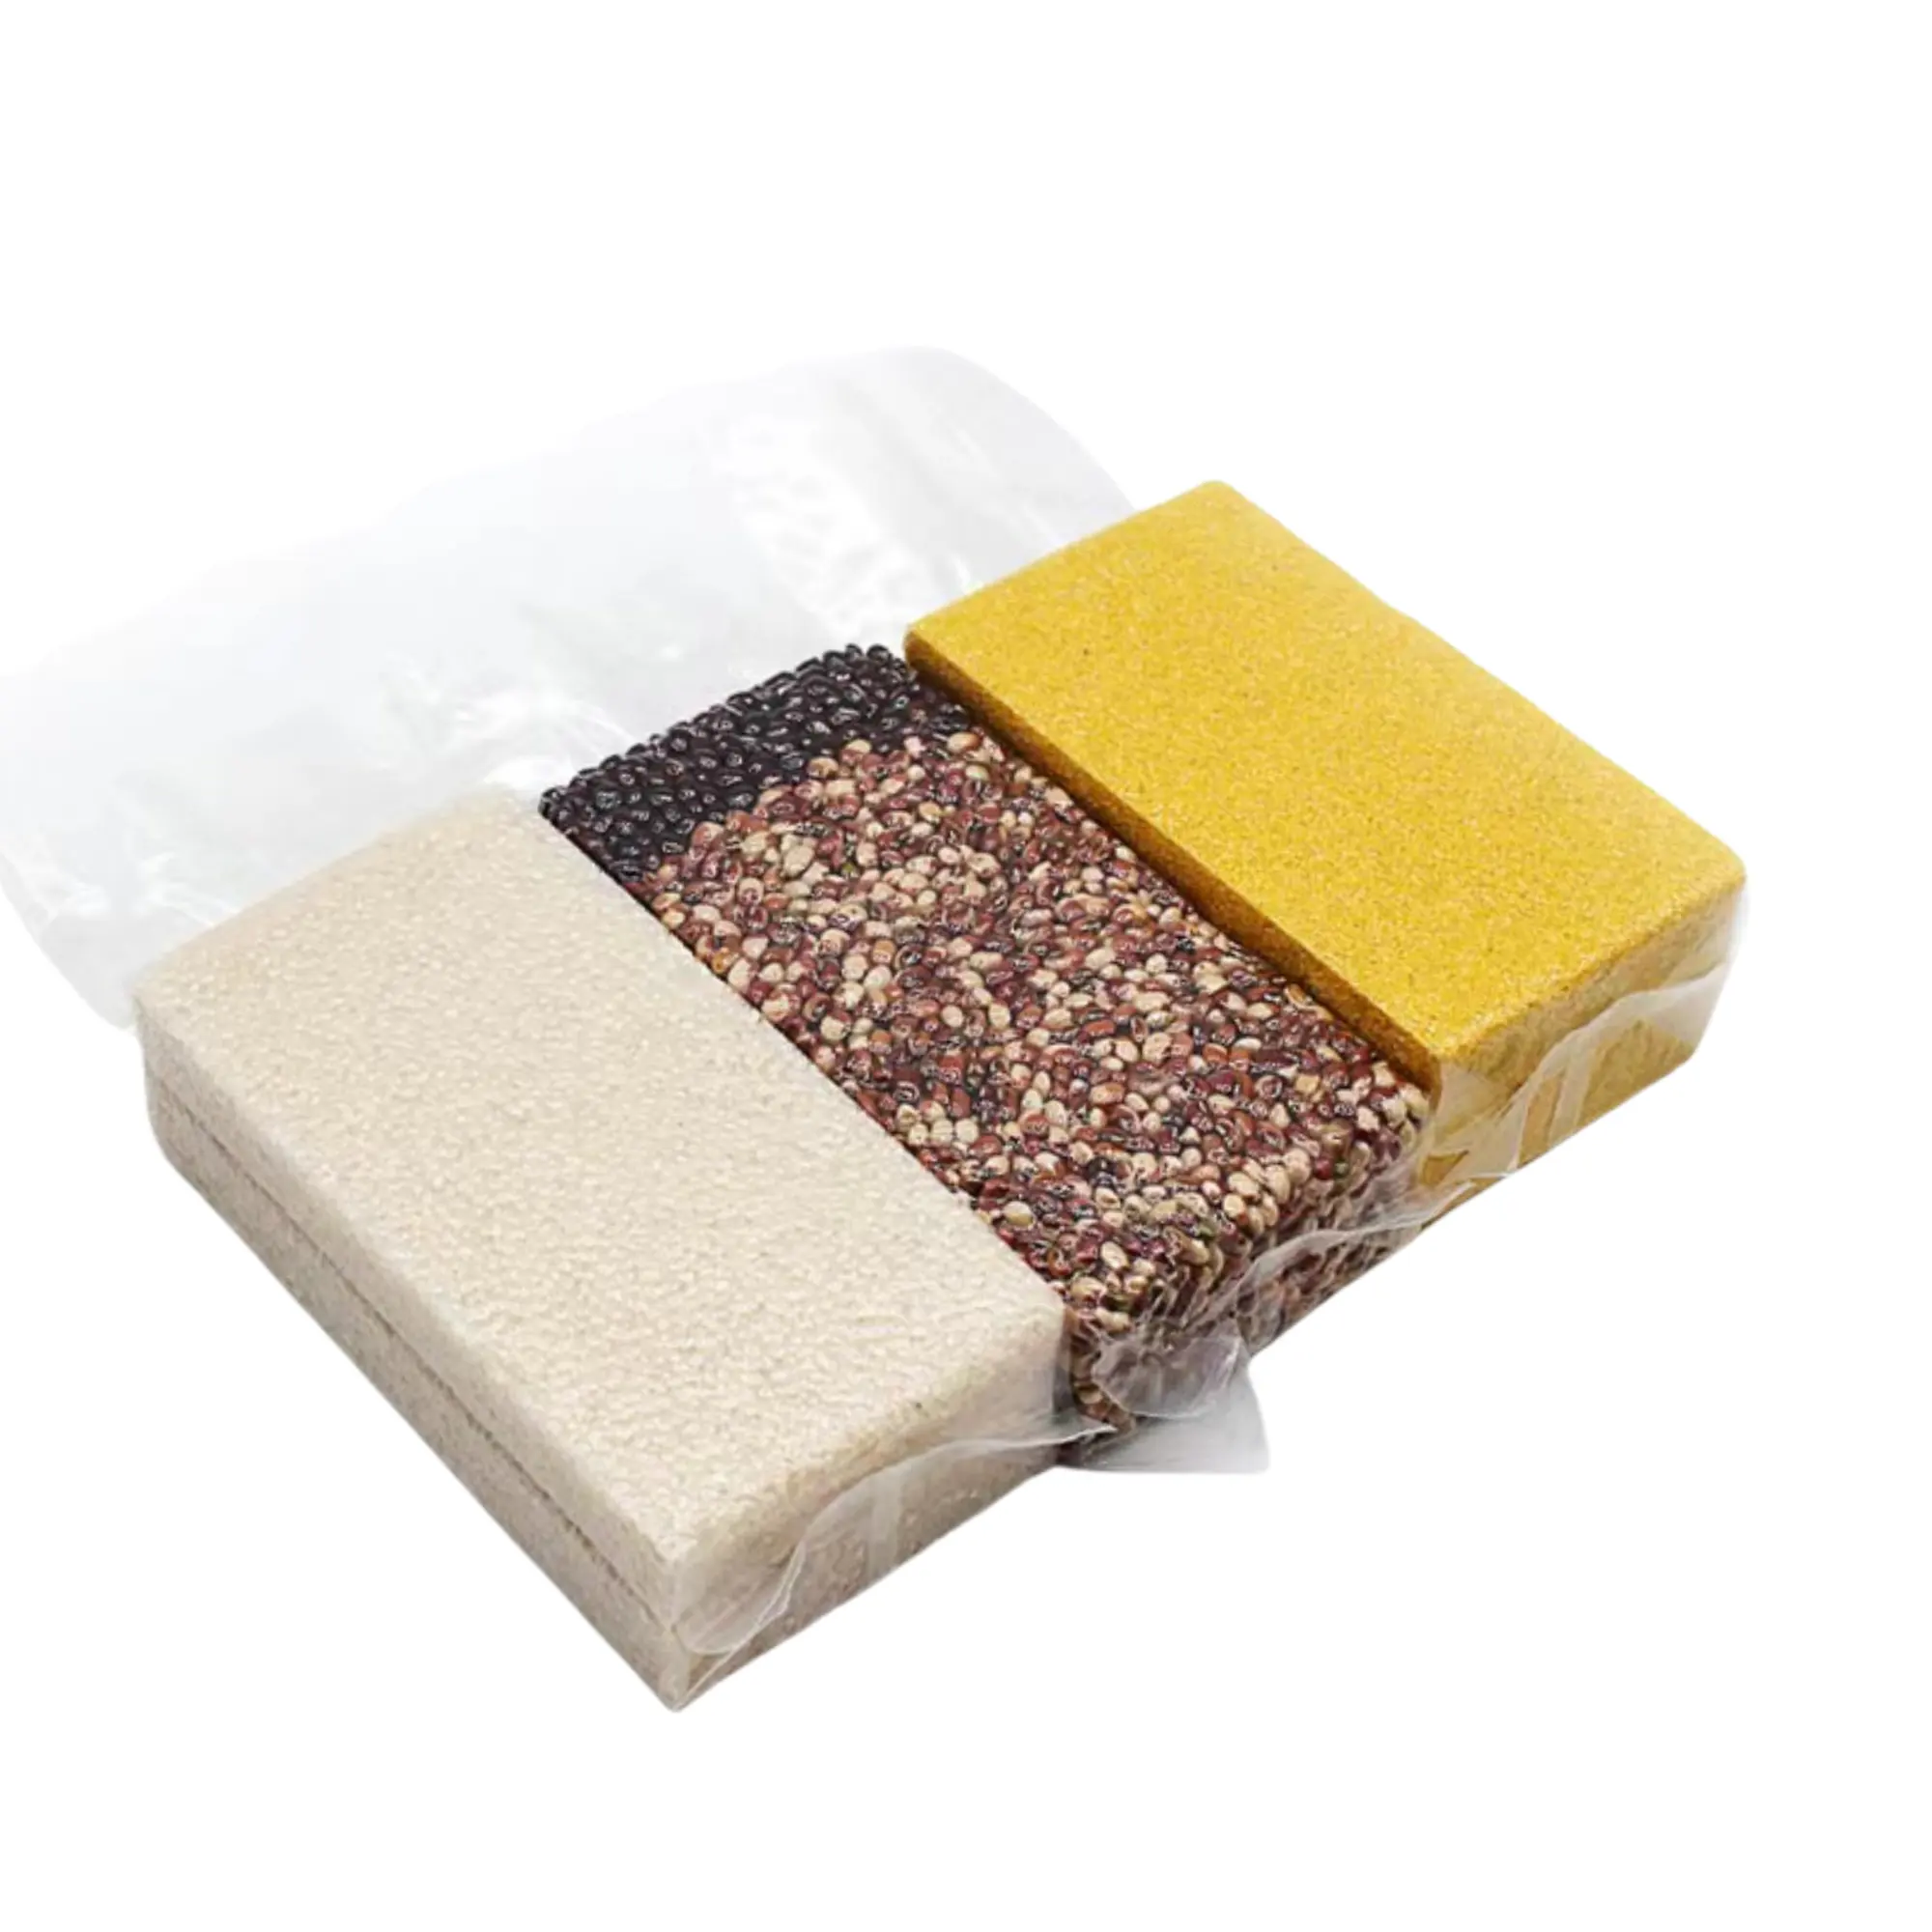 Saco de tijolo de arroz multigrãos de grão grosso personalizado embalagem plástica a vácuo transparente saco de bloco de arroz de qualidade alimentar transparente